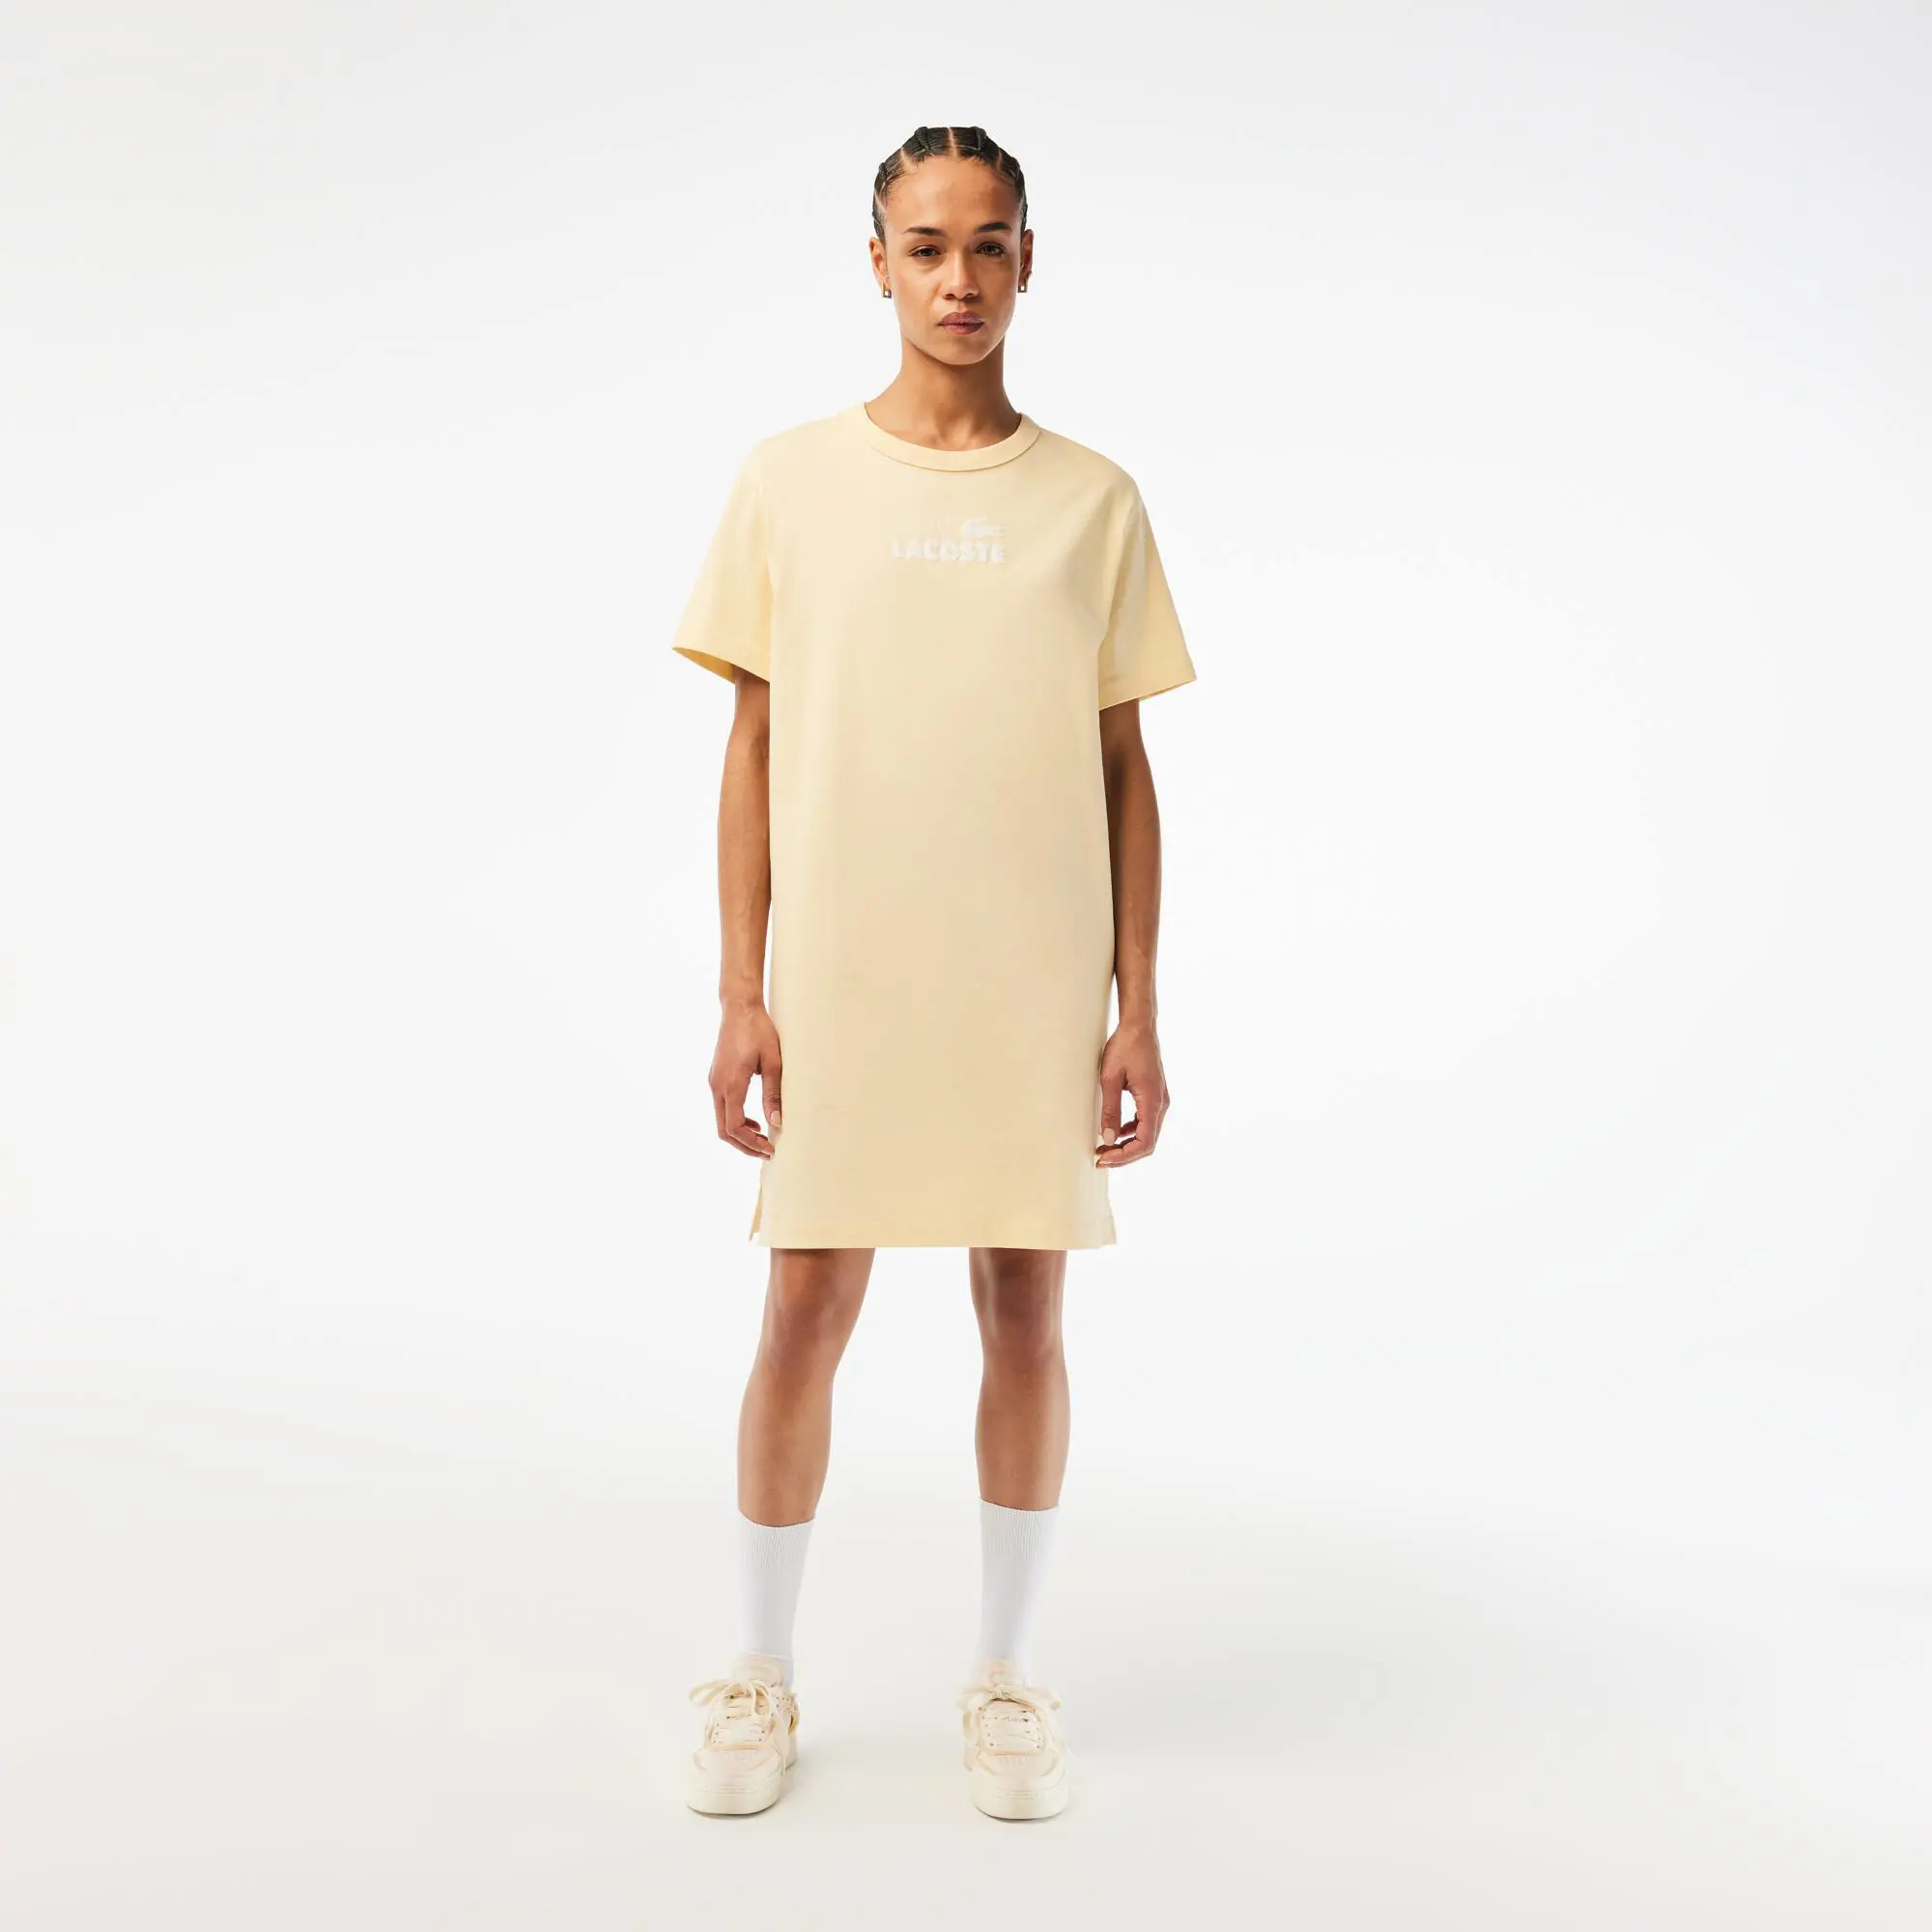 Lacoste T-shirt tipo vestido com estampado de algodão orgânico Lacoste para senhora. 1